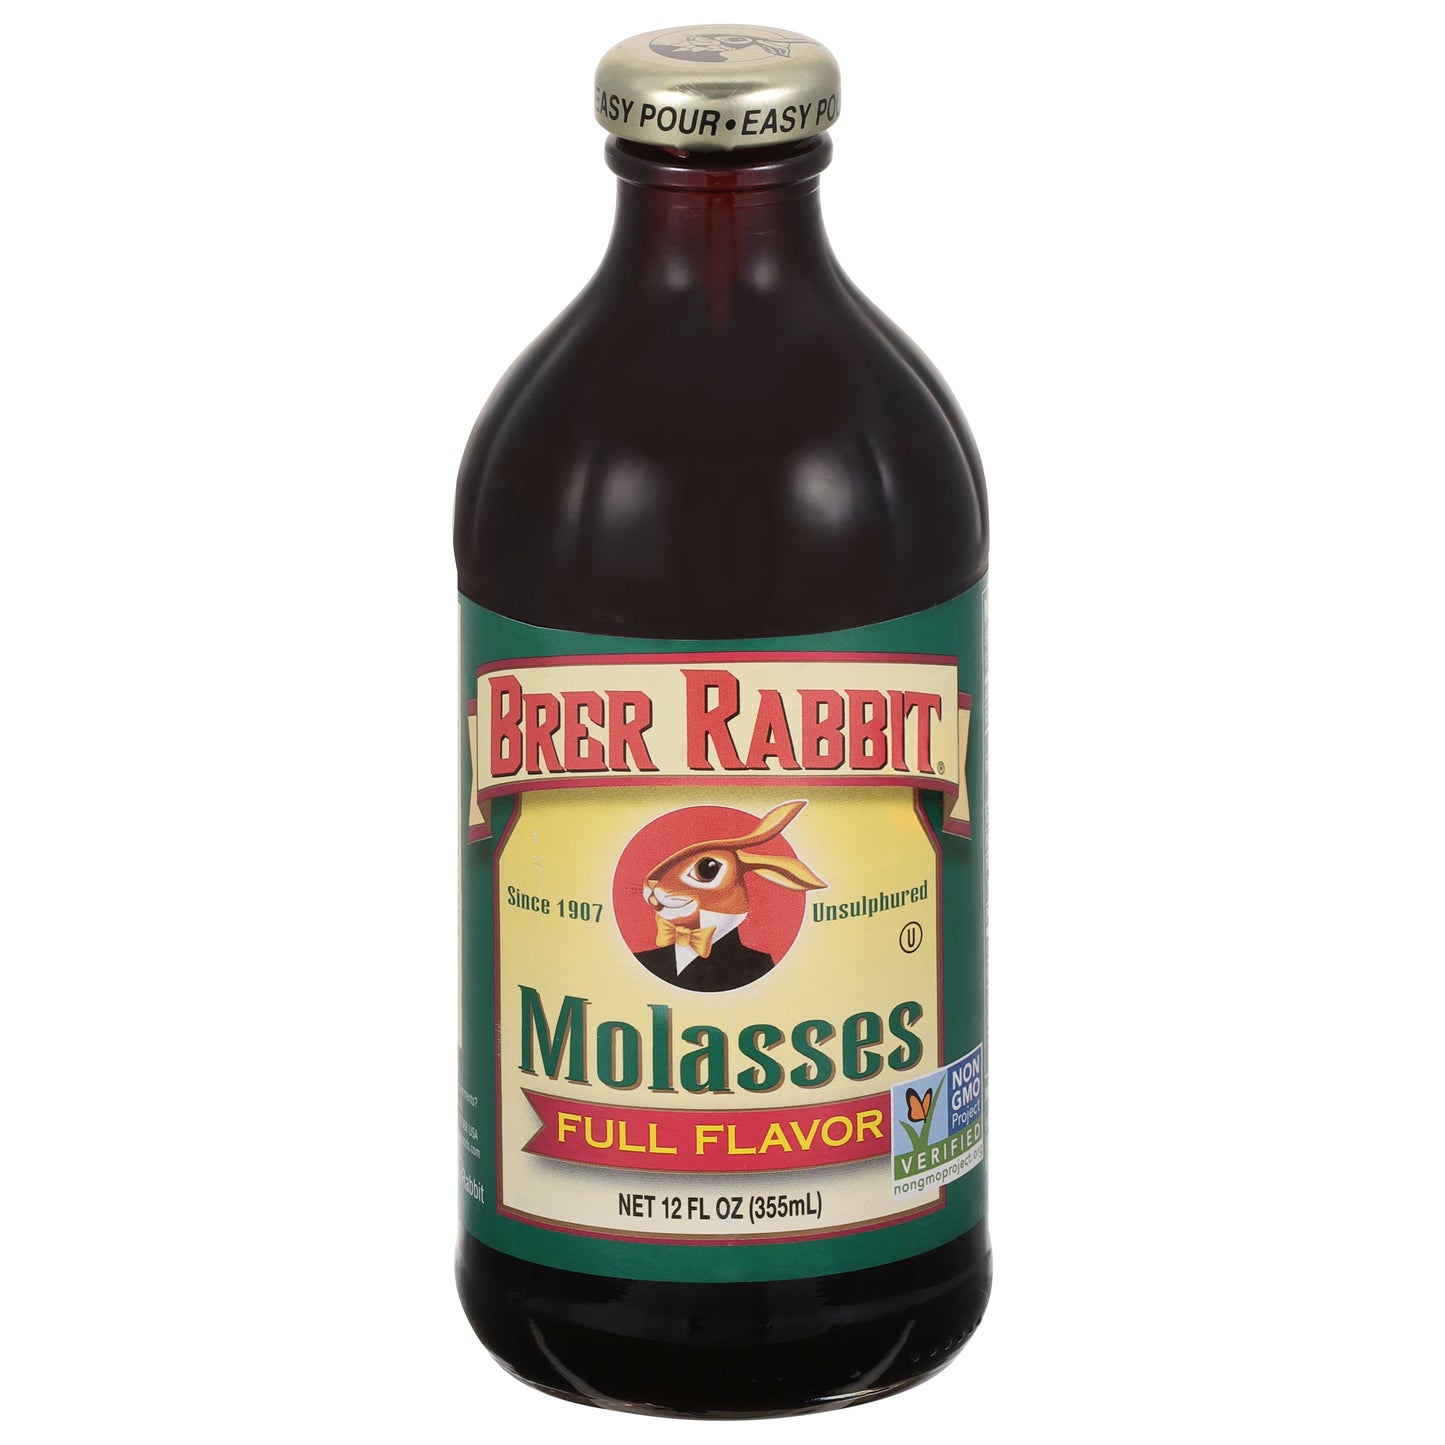 Brer Rabbit Full Flavor Molasses, 12 fl oz